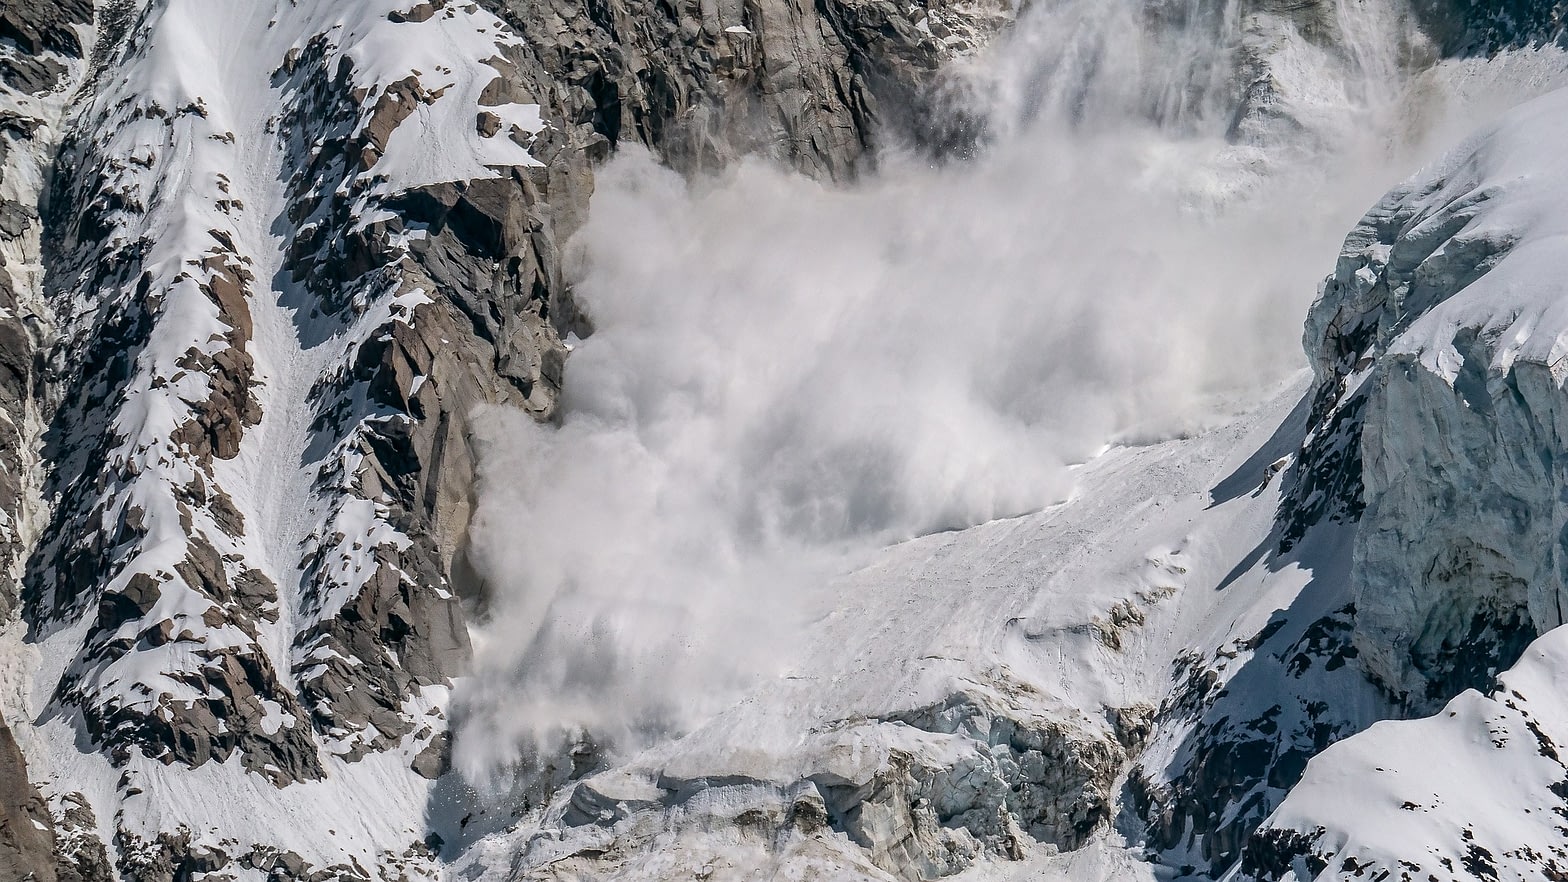 An avalanche cascades down a mountain - yourmoneyvehicle.com